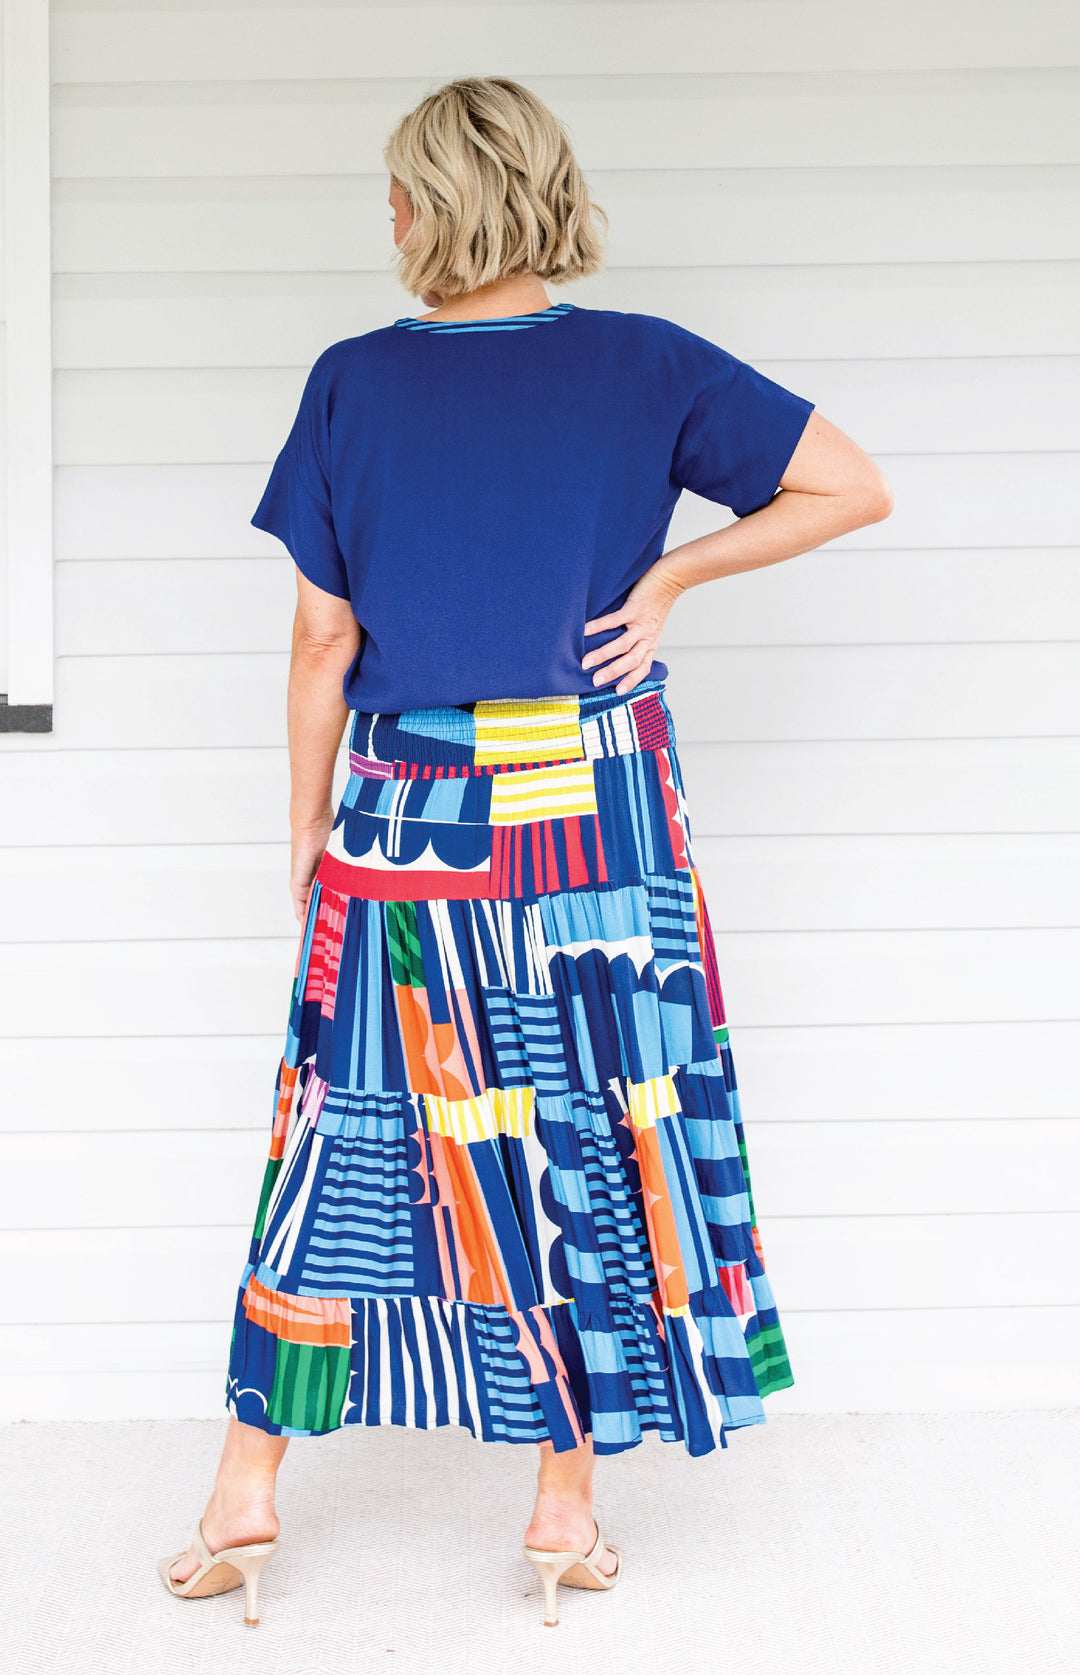 Florida Dress/Skirt in little wonder stripes